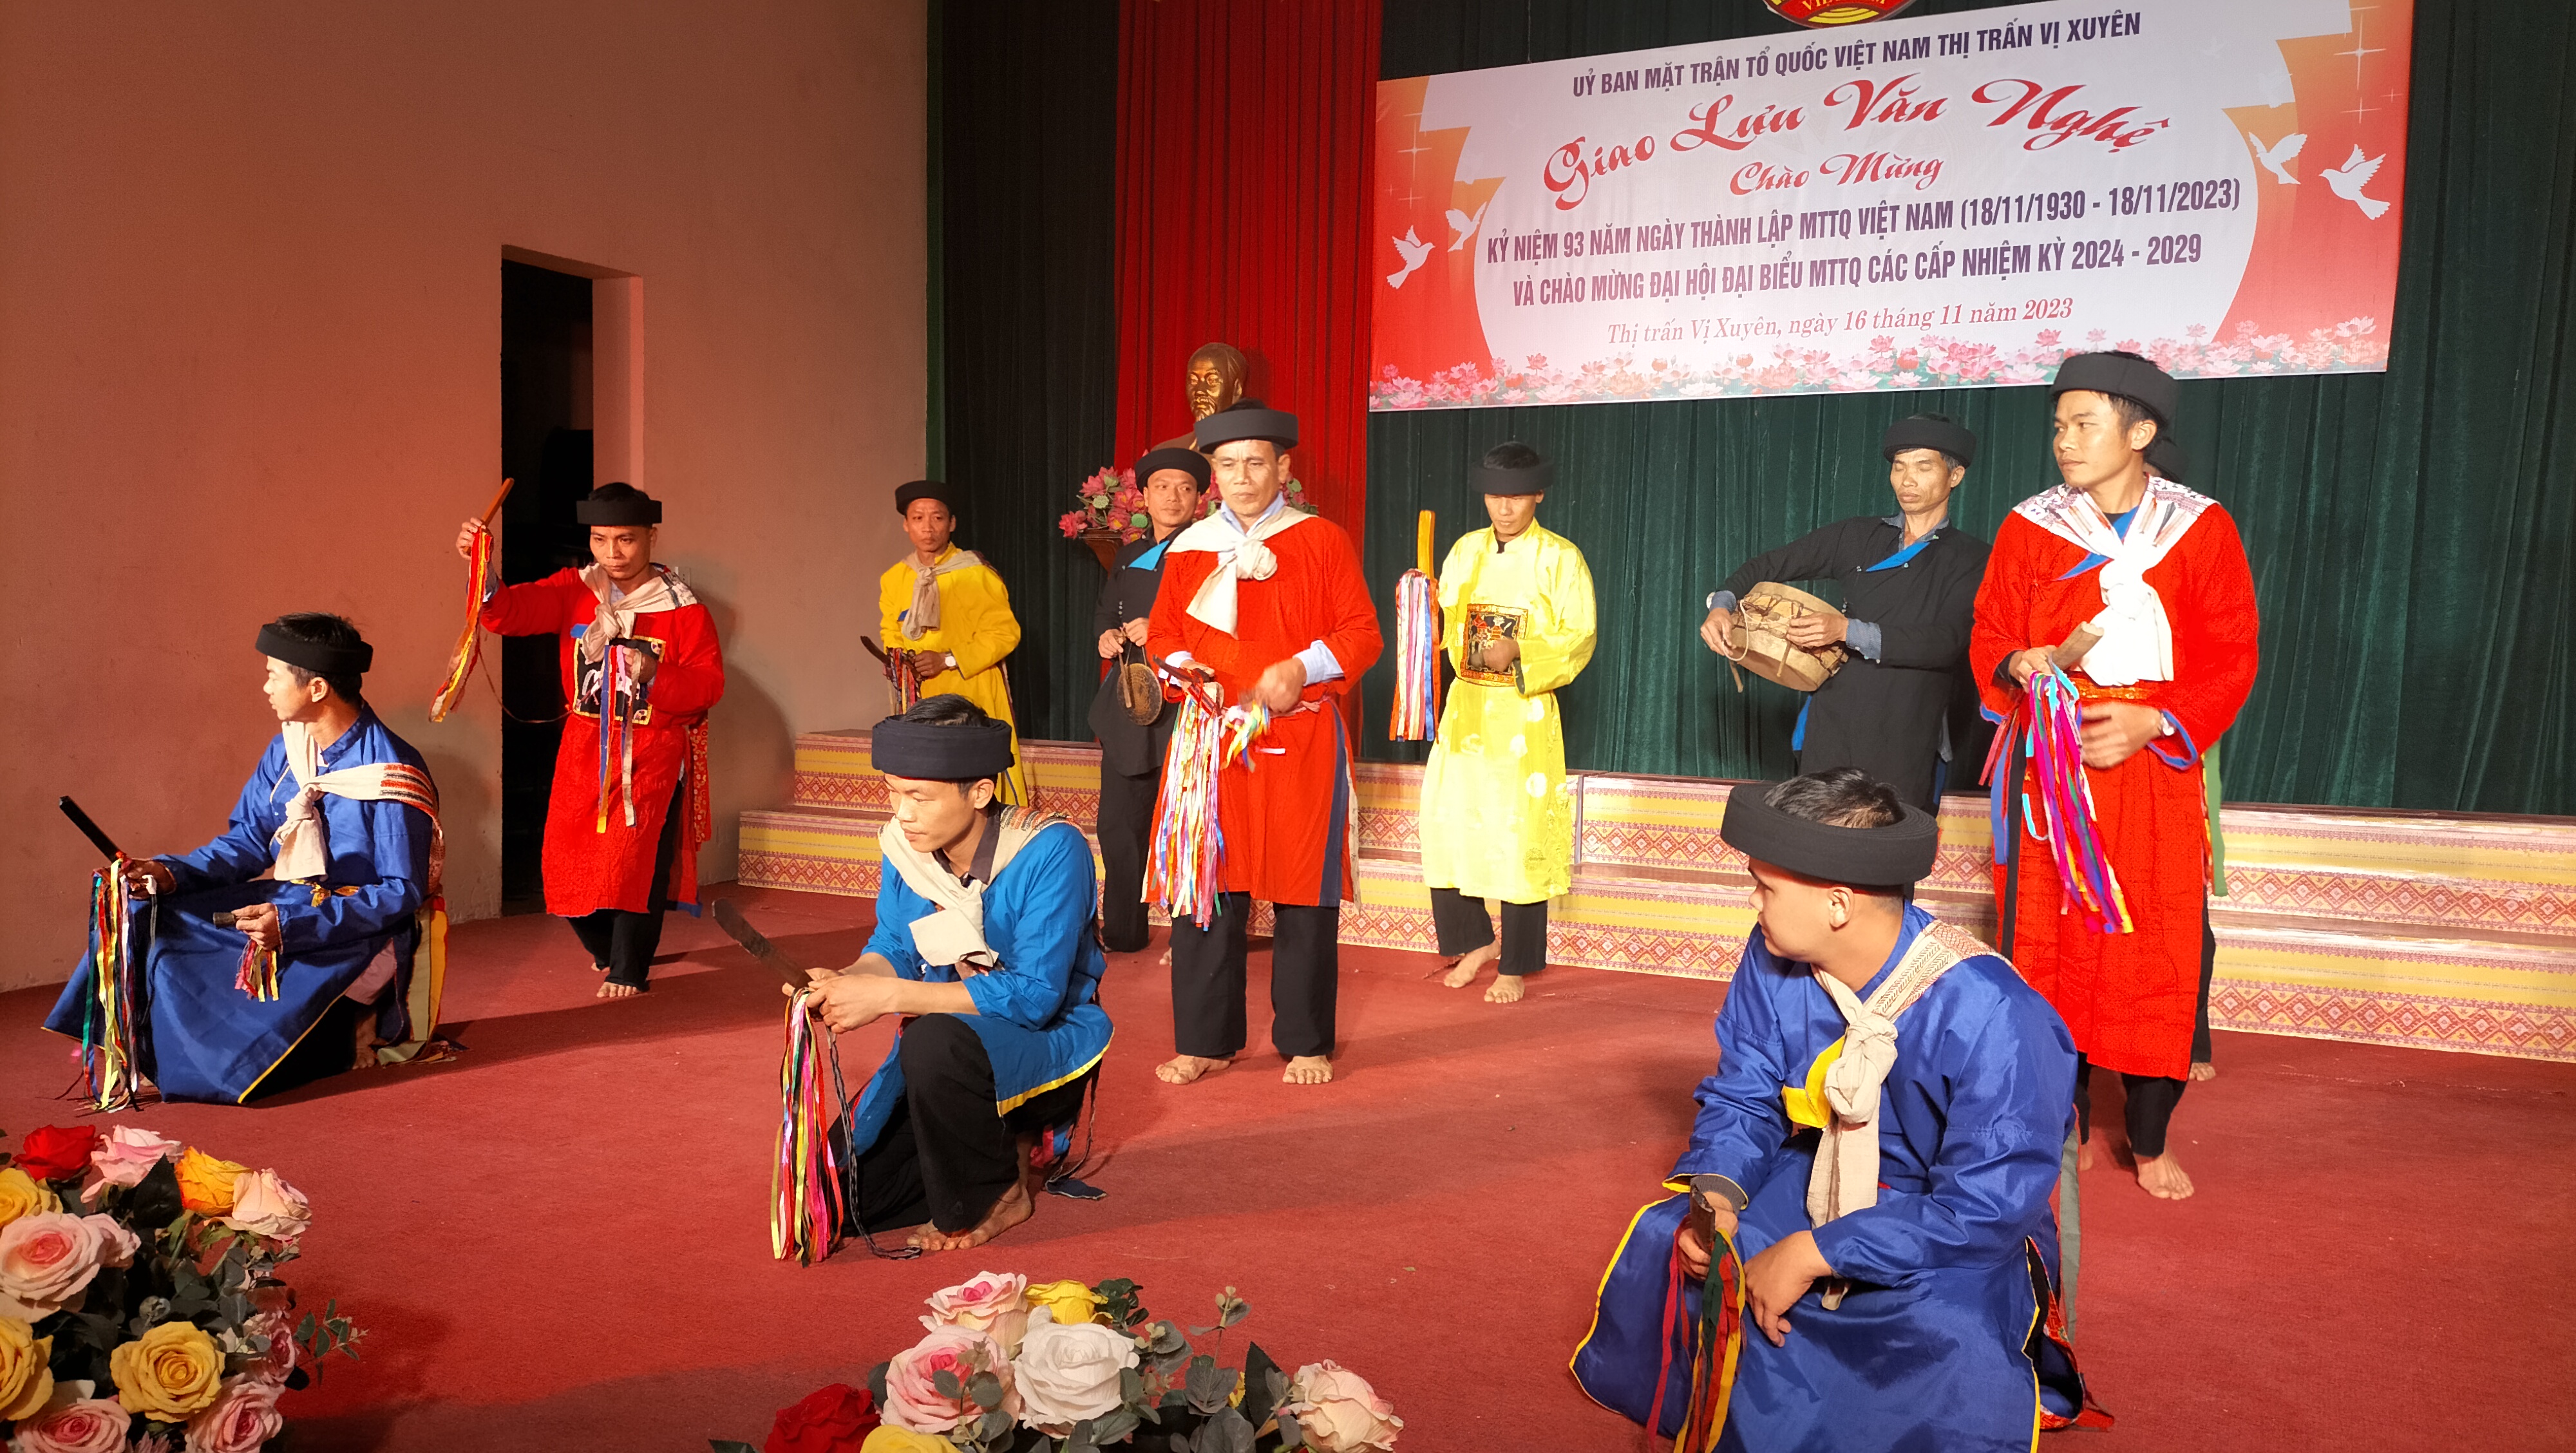 Mặt trận Tổ quốc thị trấn Vị Xuyên tổ chức đêm giao lưu văn nghệ